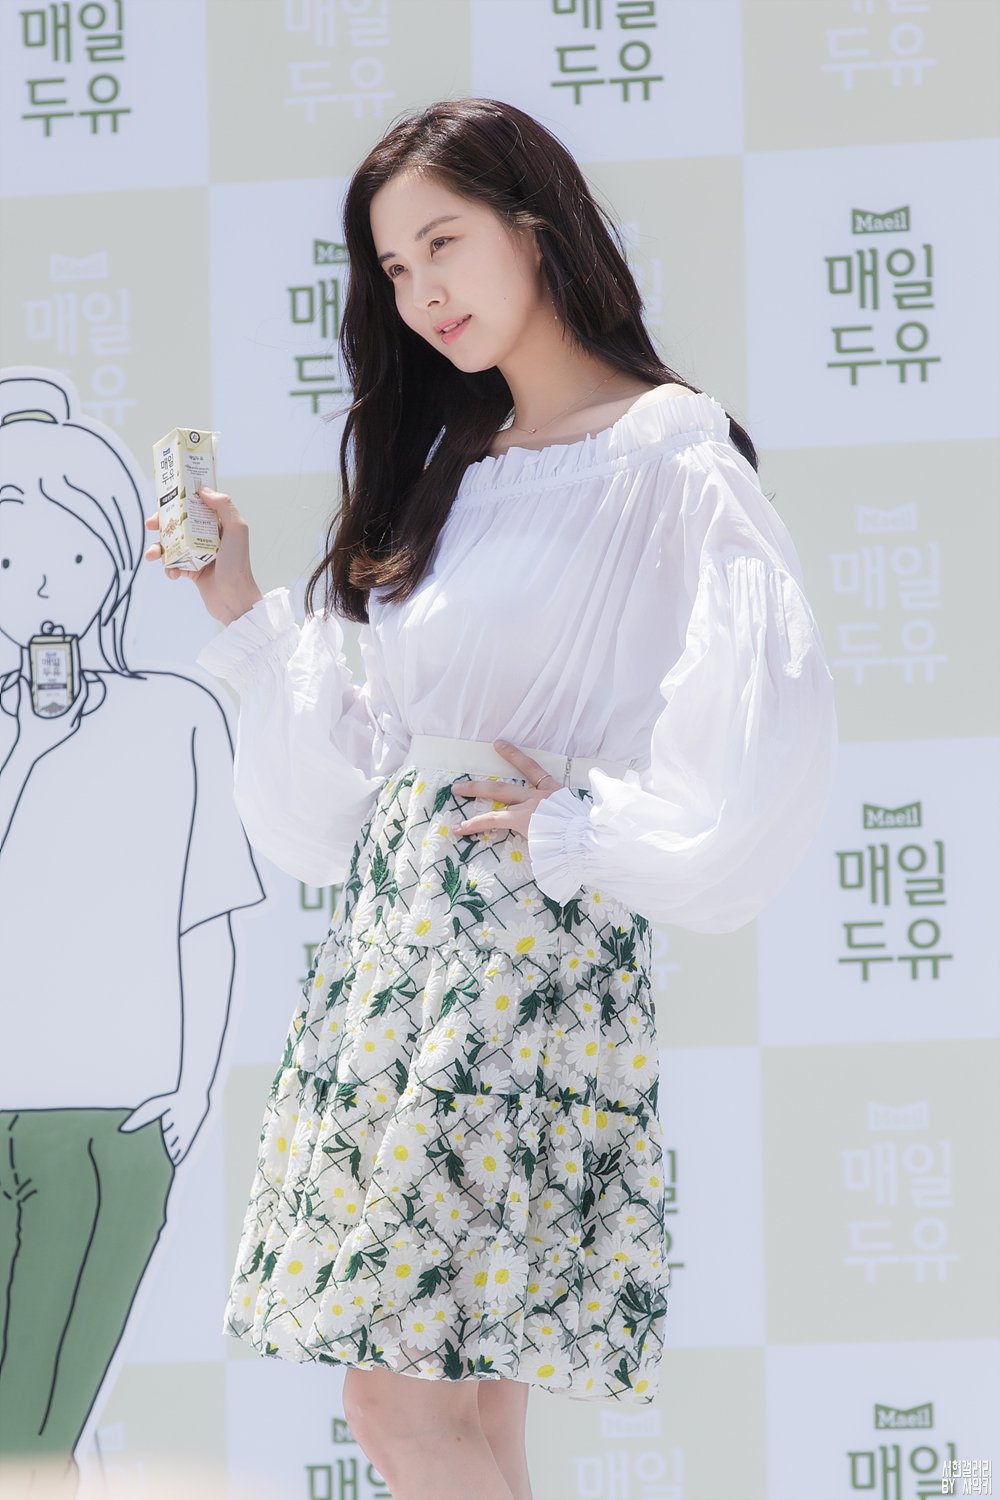  [PIC][03-06-2017]SeoHyun tham dự sự kiện “City Forestival - Maeil Duyou 'Confidence Diary'” vào chiều nay - Page 4 6ZCSN6uKqP-3000x3000